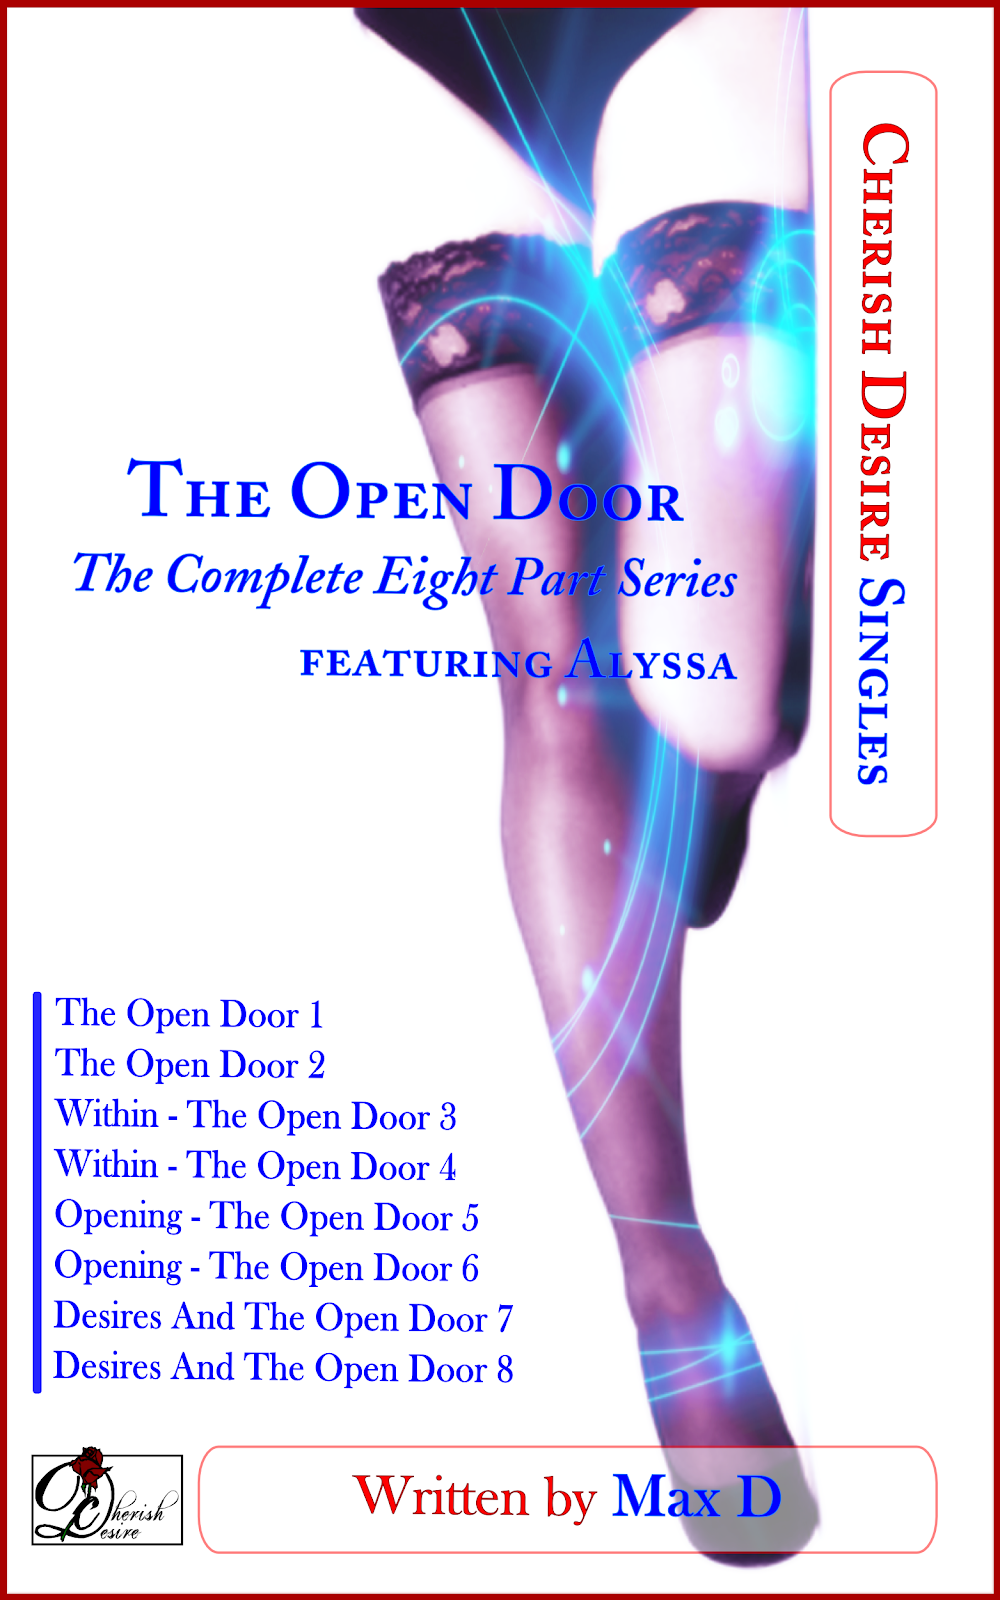 Cherish Desire Singles: The Open Door (The Complete Eight Part Series) featuring Alyssa, Alyssa, Tom, Max D, erotica